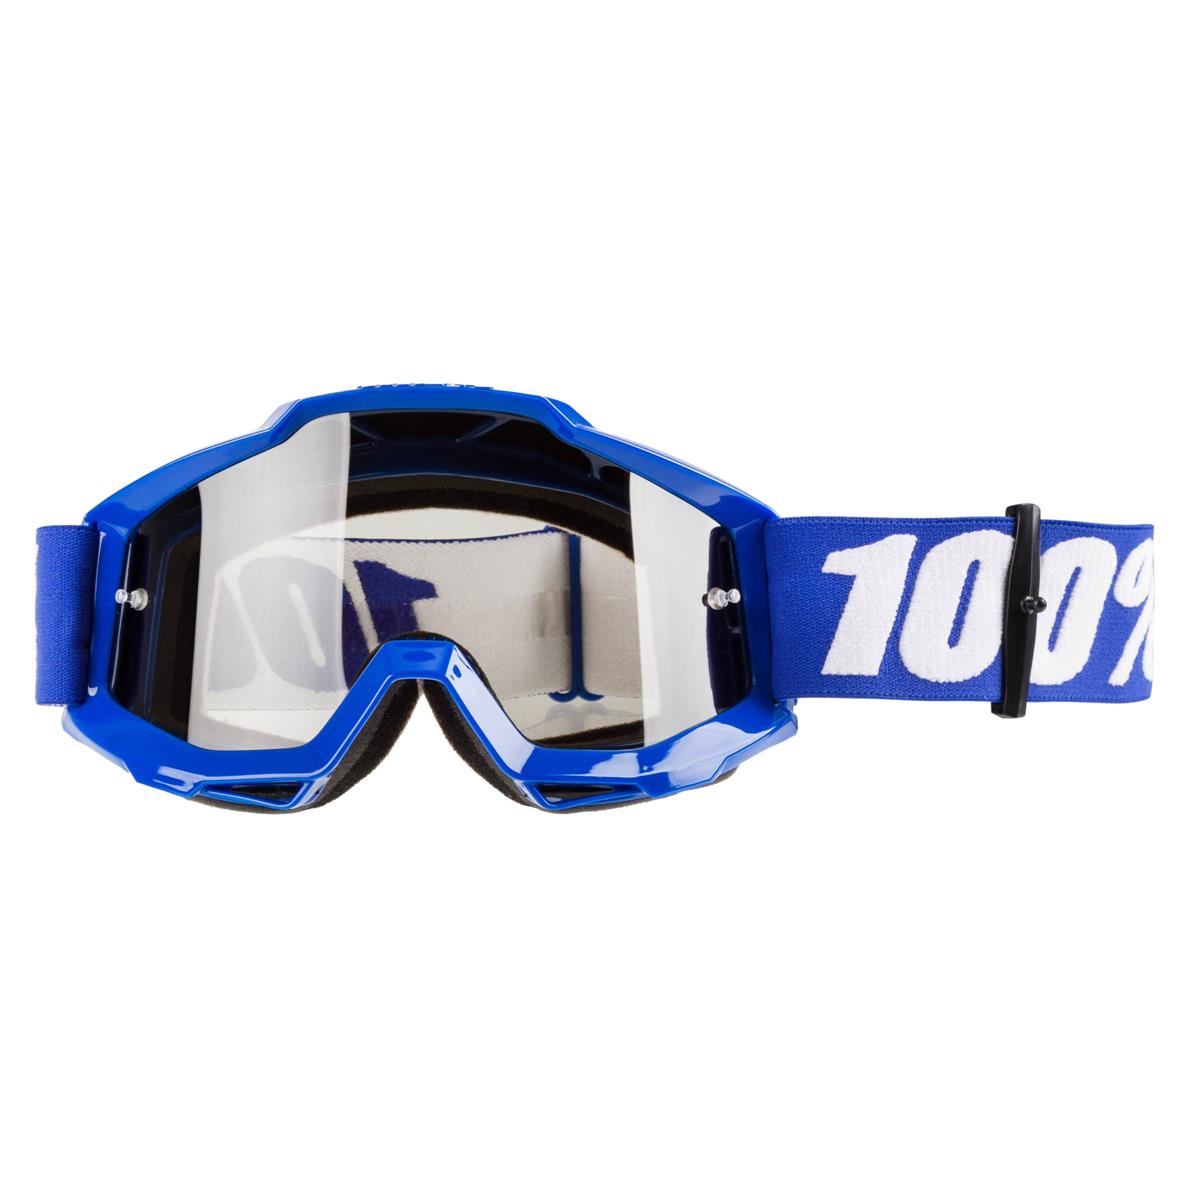 100% Crossbrille Accuri Sand Reflex Blue - Silber verspiegelt